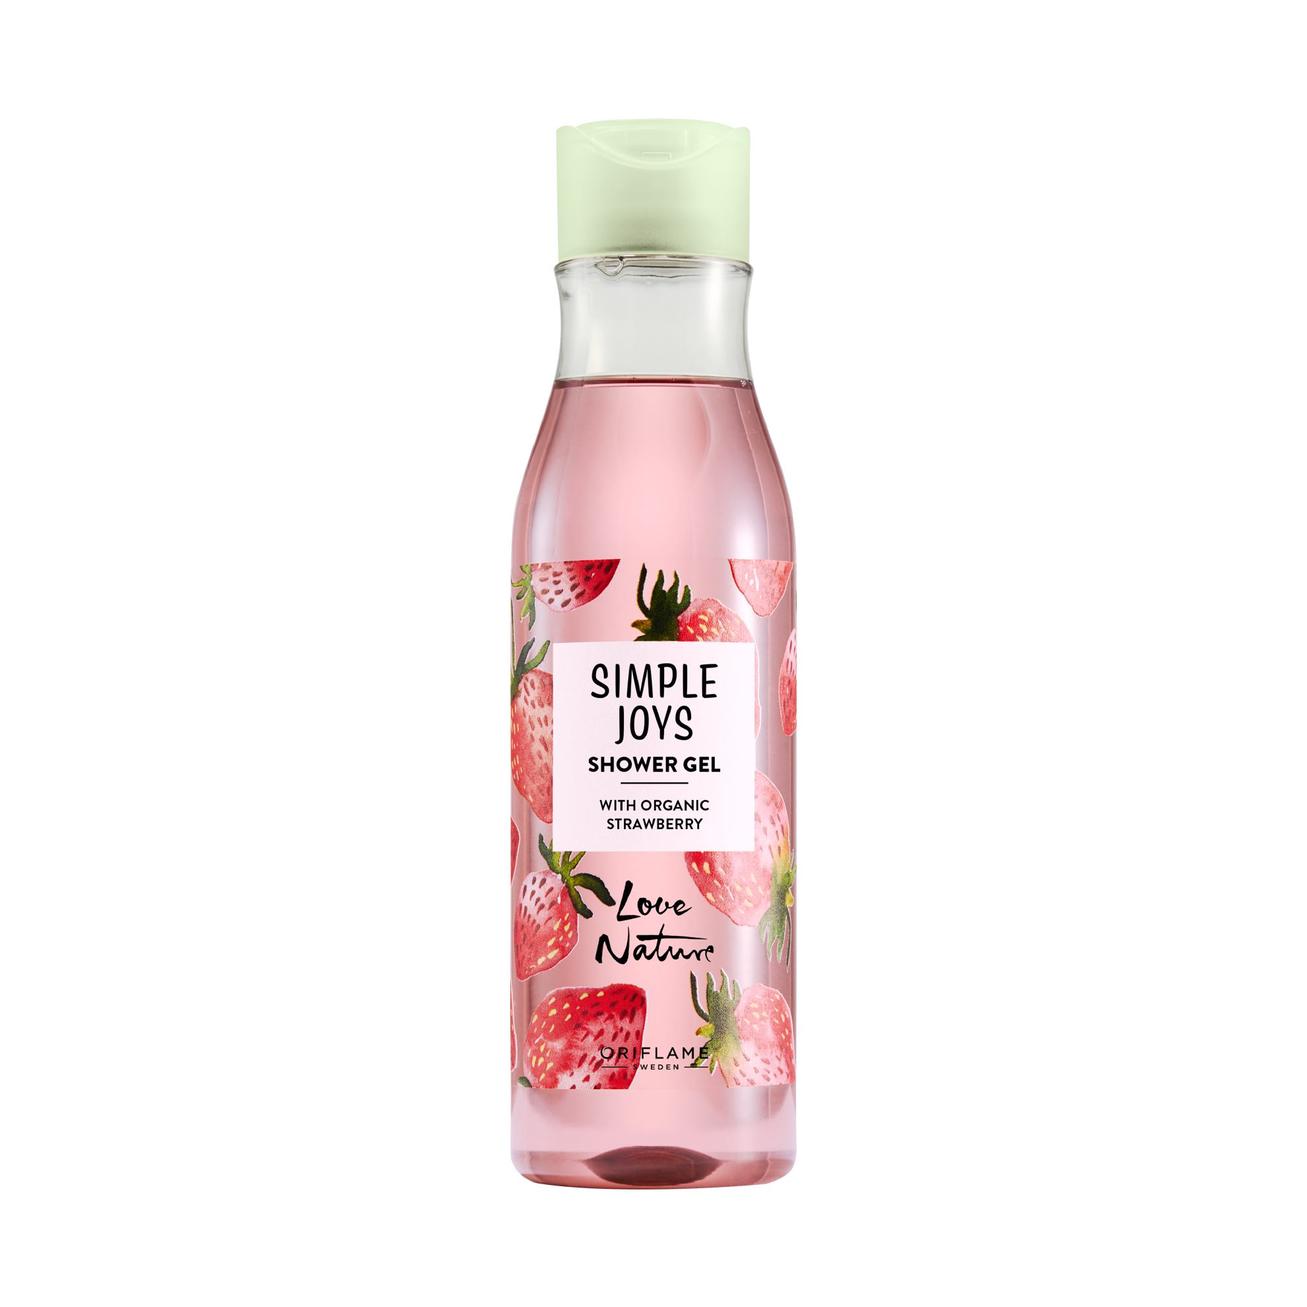 Aanbieding van Simple Joys Shower Gel with Organic Strawberry Love Nature voor 4,49€ bij Oriflame